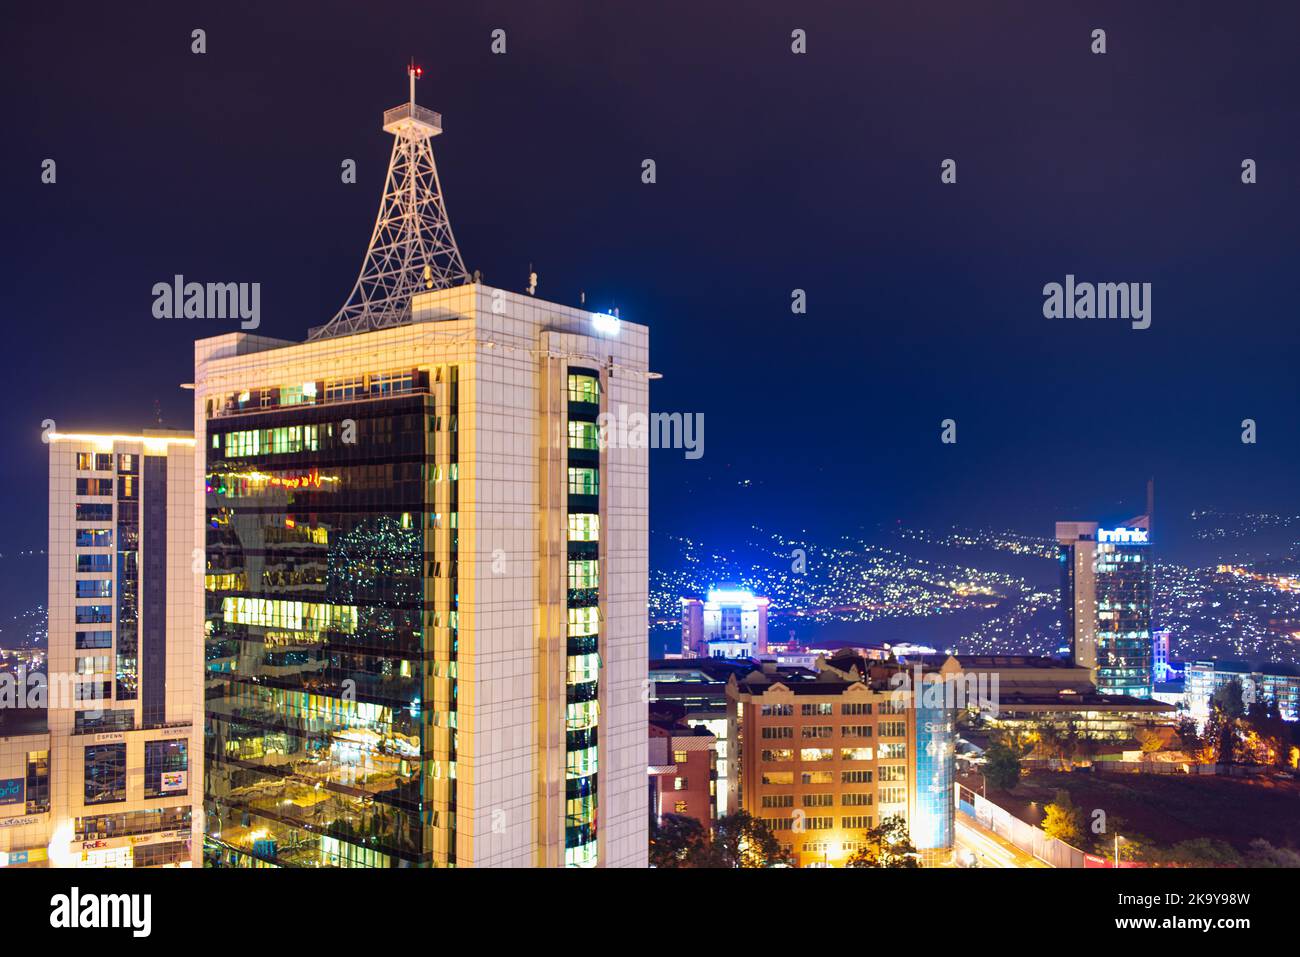 Kigali, Rwanda - 17 août 2022 : le centre-ville de Kigali s'illumine la nuit avec la place de la pension, la tour de la ville et d'autres bâtiments en vue. Banque D'Images